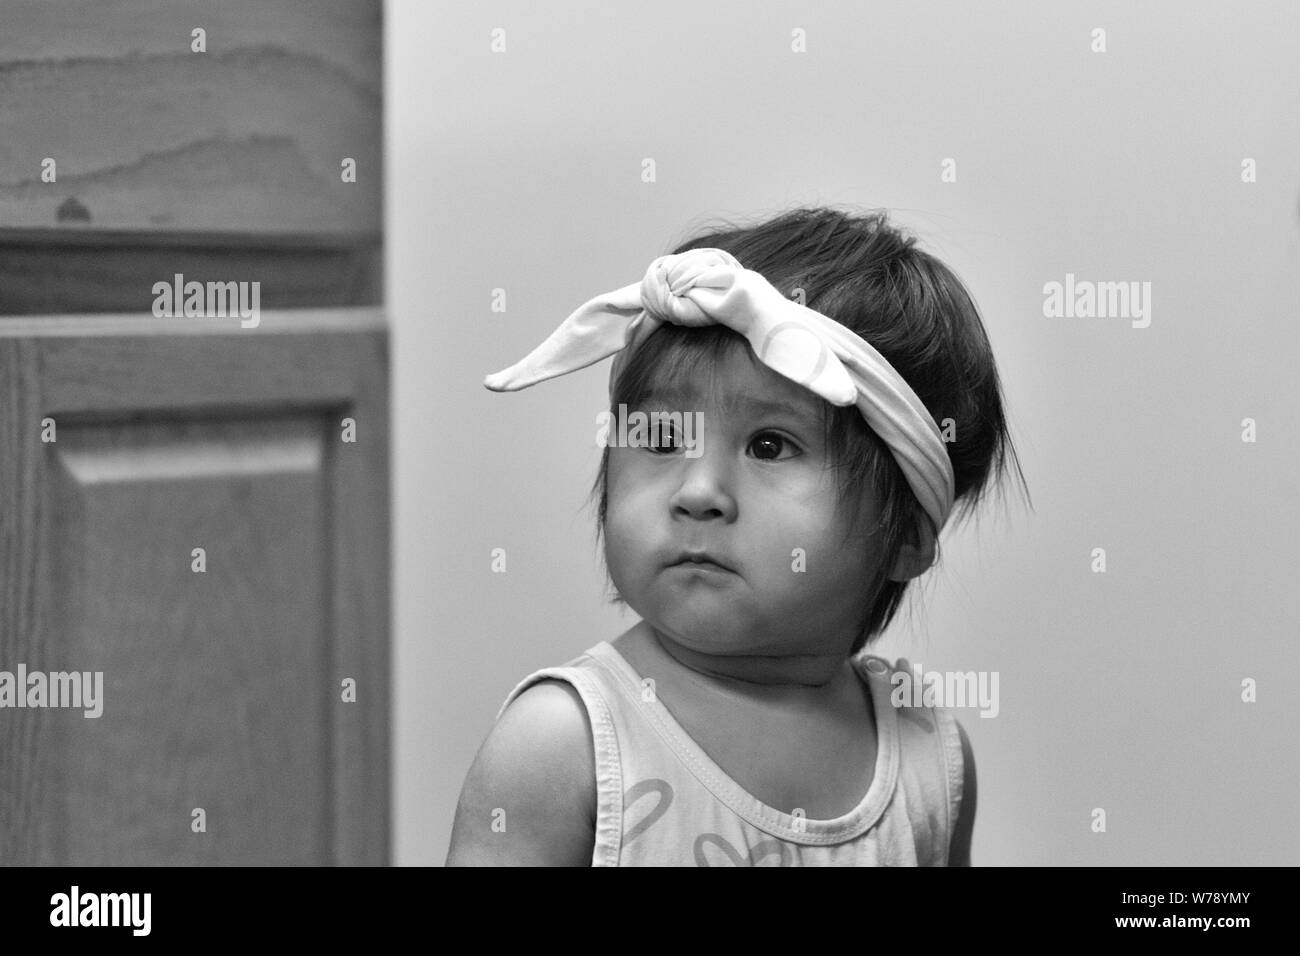 Una mujer hispana de bebé o niño pequeño, llevaba un pañuelo en la cabeza, mira hacia el lado. Foto de stock